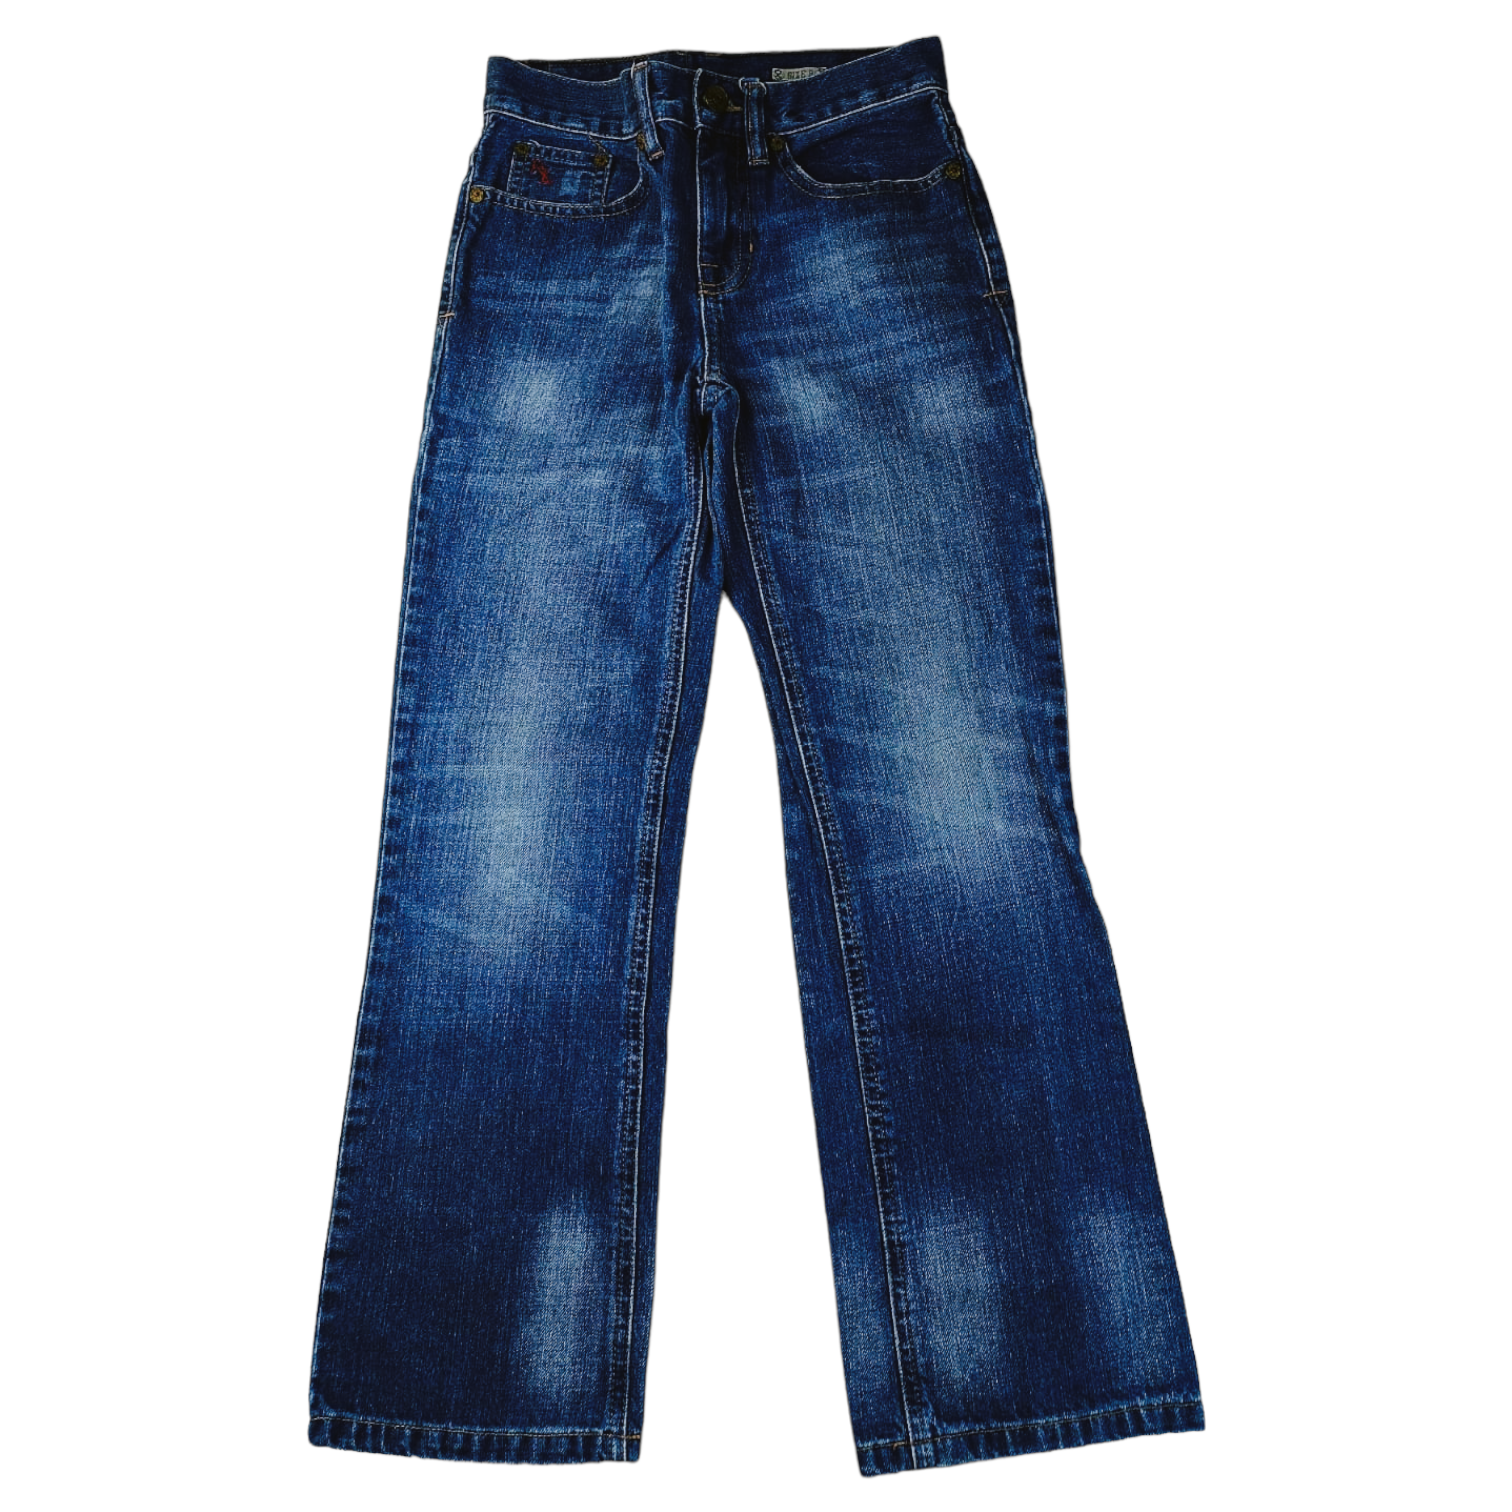 Pantalon Ralph Lauren de mezclilla azul